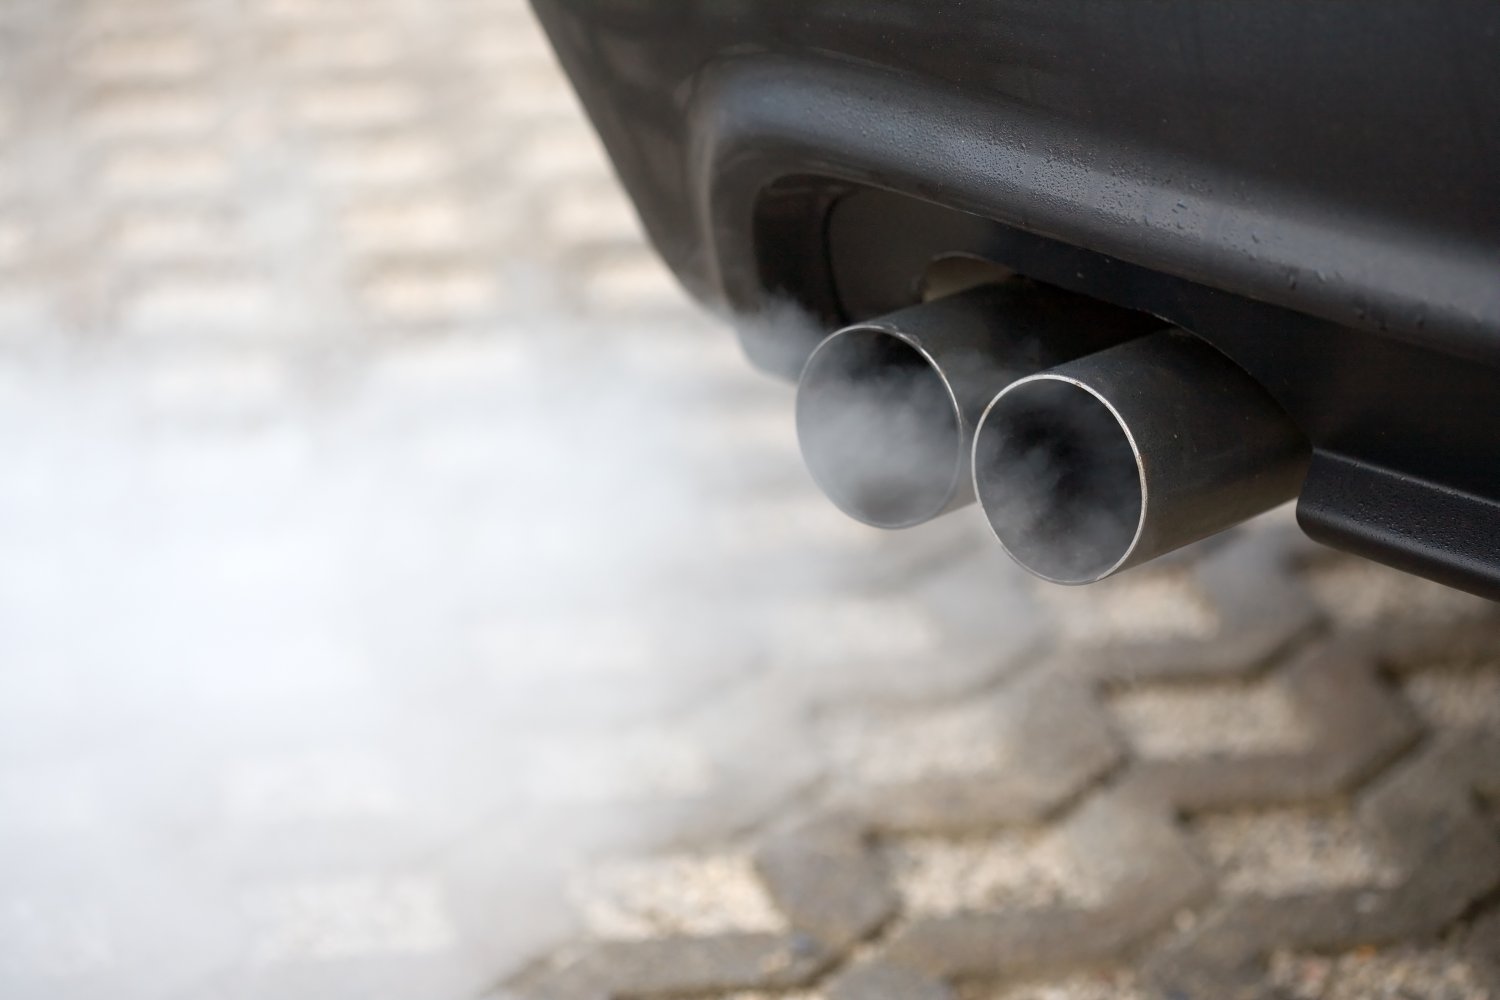 Des normes antipollution fixent des seuils pour réduire la pollution des véhicules.&nbsp;© Stefan Redel/shutterstock.com